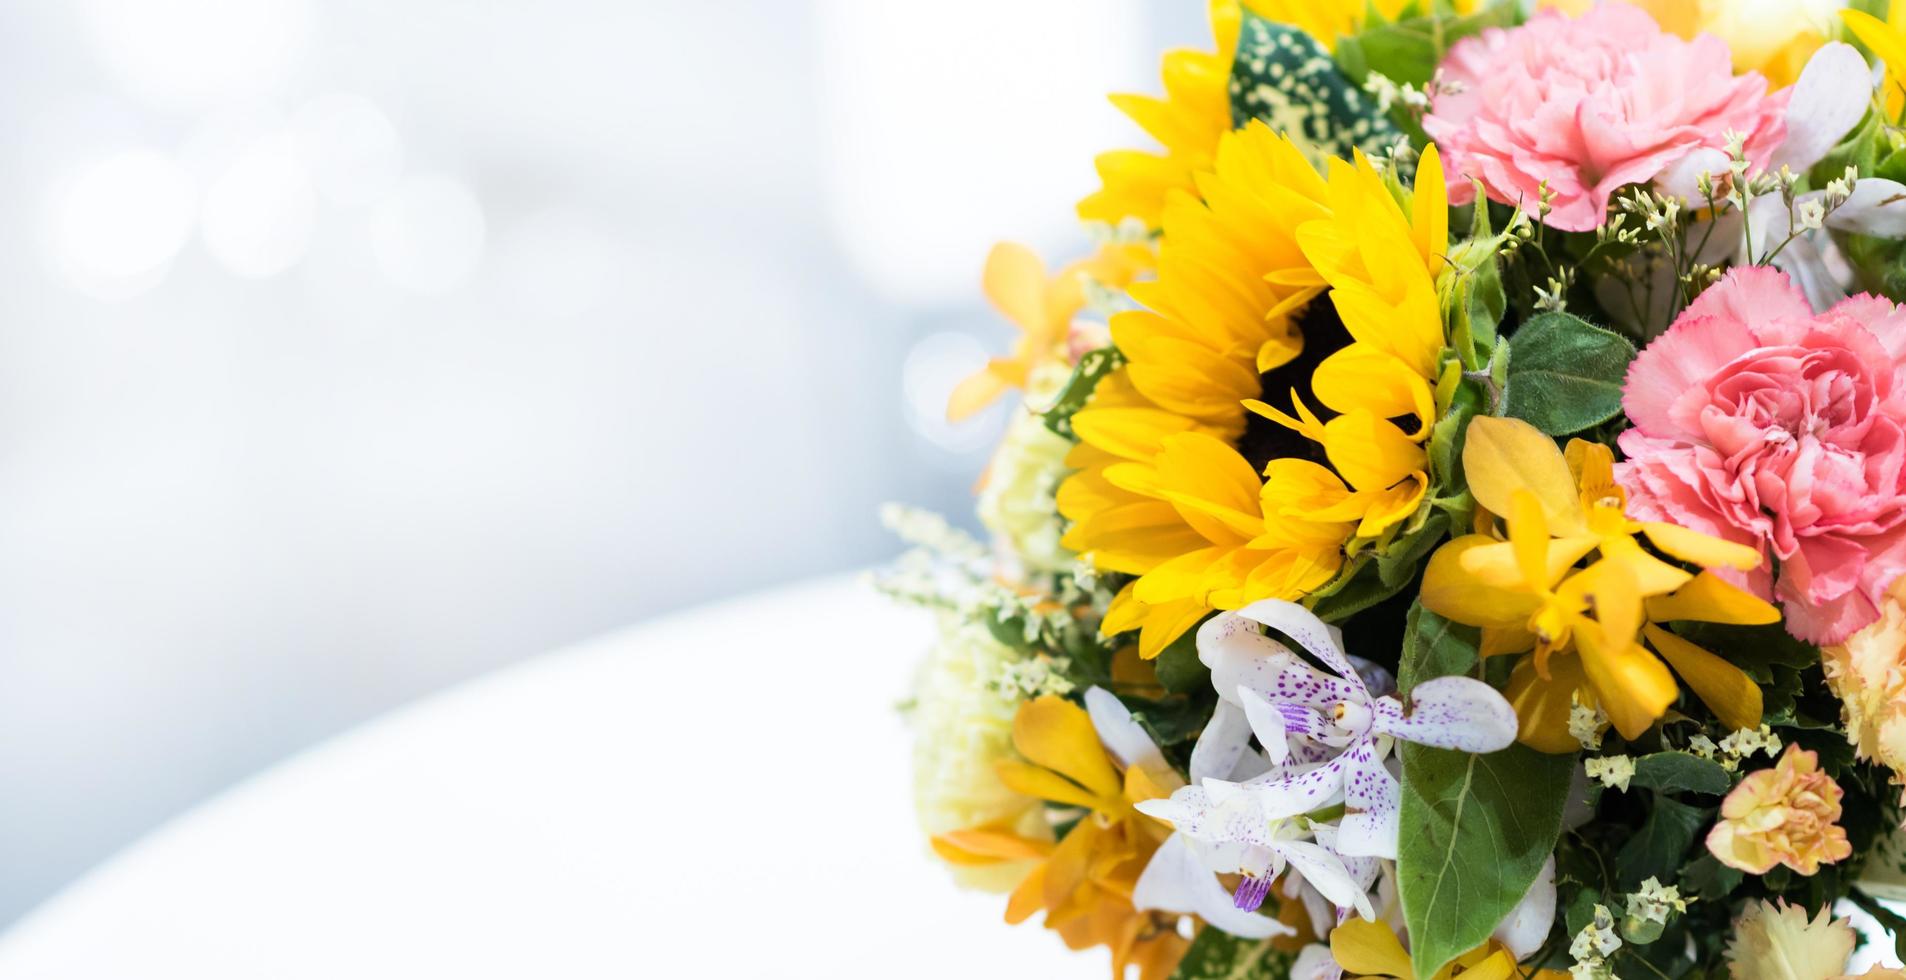 Beautiful bouquet of flowers colorful, Floral arrangement photo